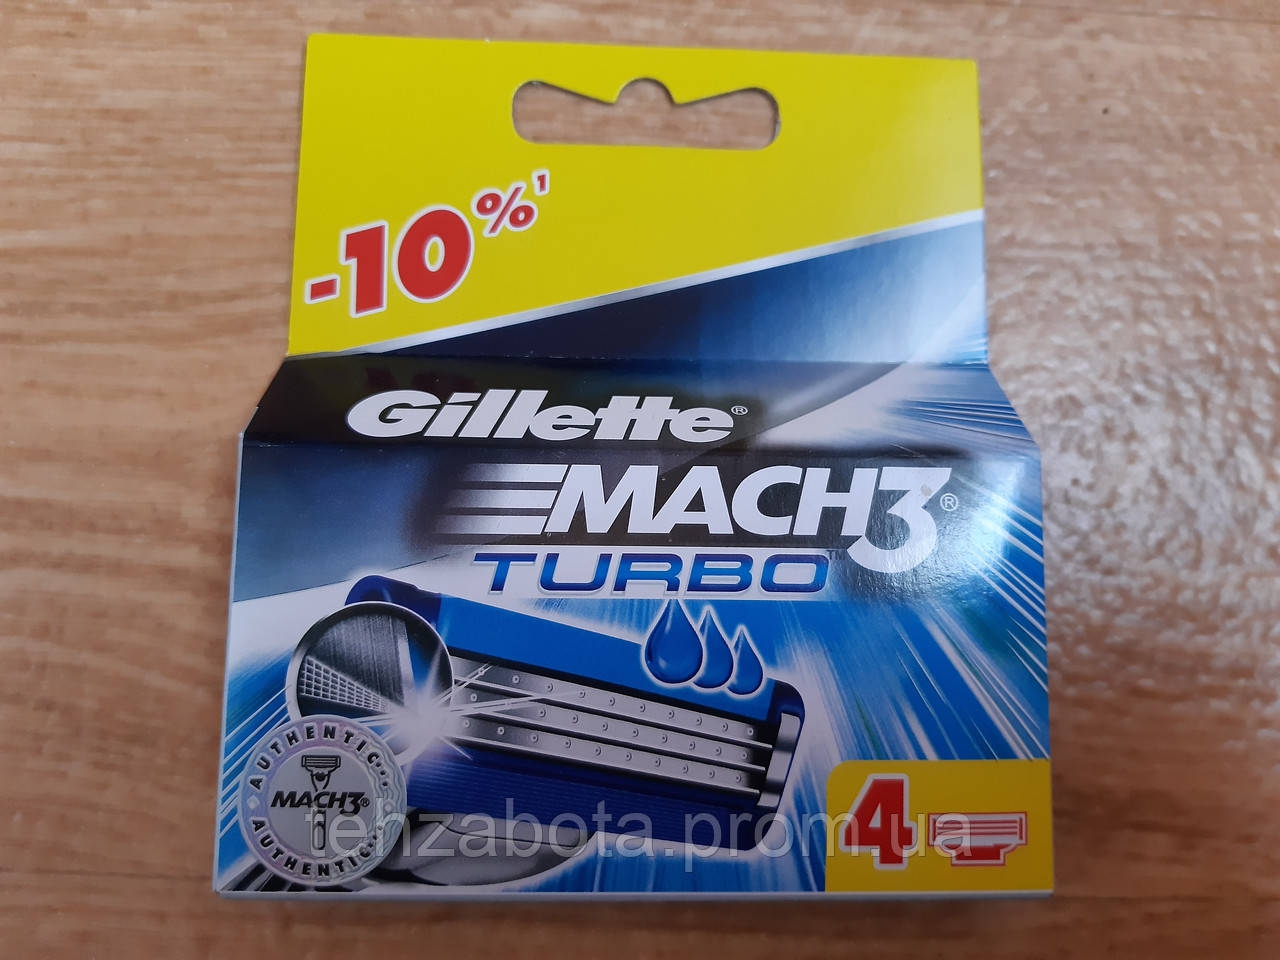 Змінні Касети Картриджі Леза Джилет Мак3 Турбо Gillette Mach3 Тurbo до станків для гоління, 4 шт. Оригінал